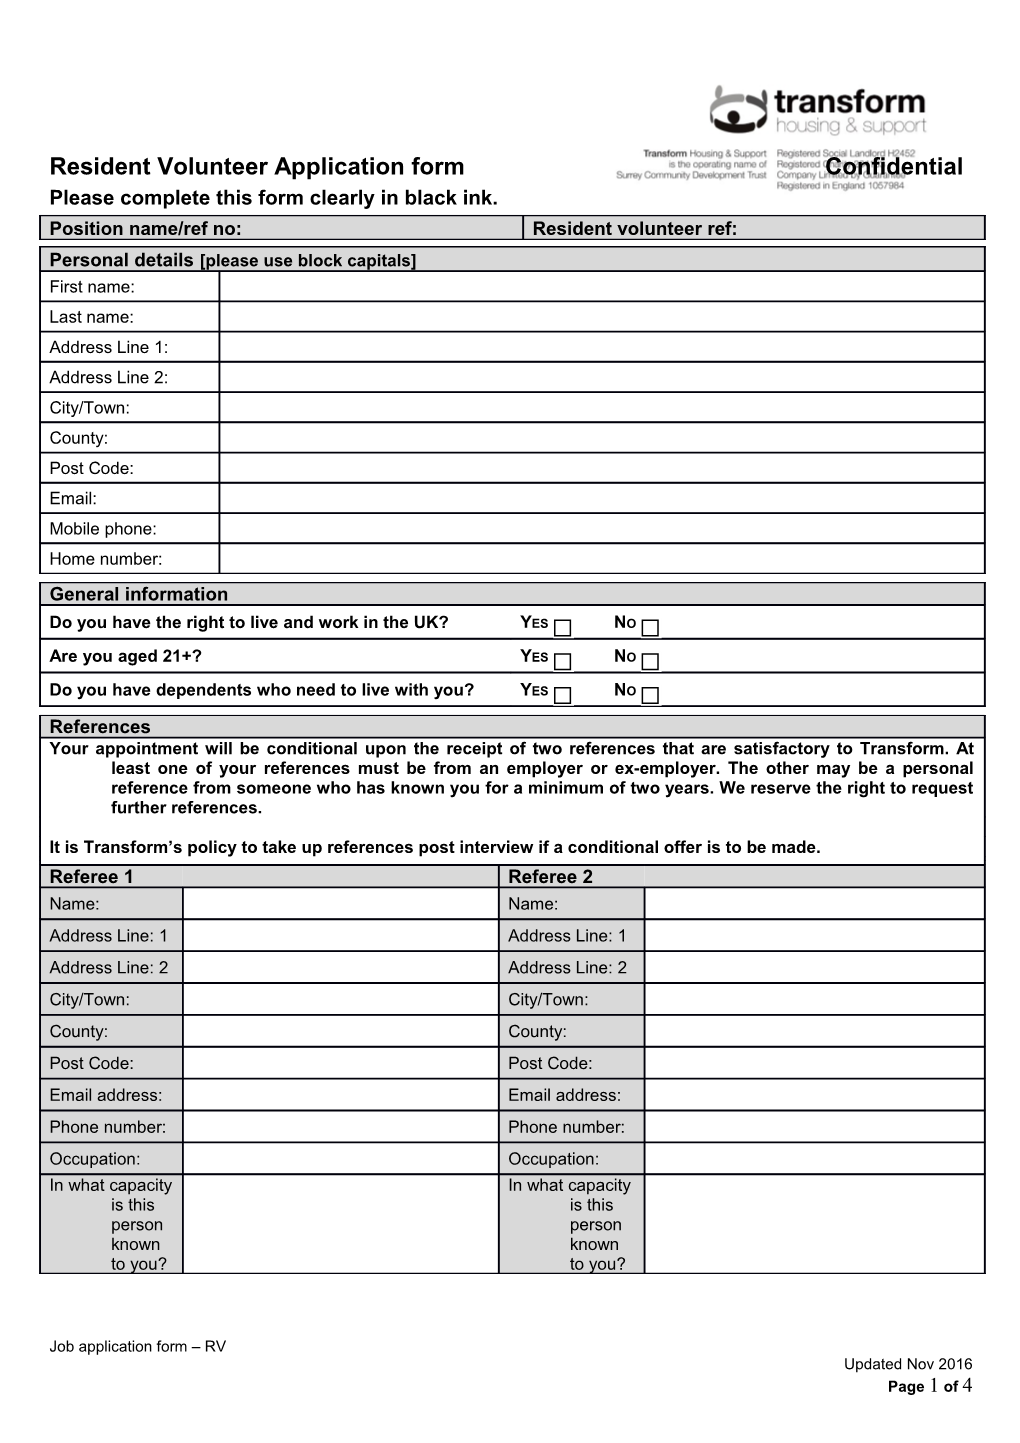 Resident Volunteer Application Form